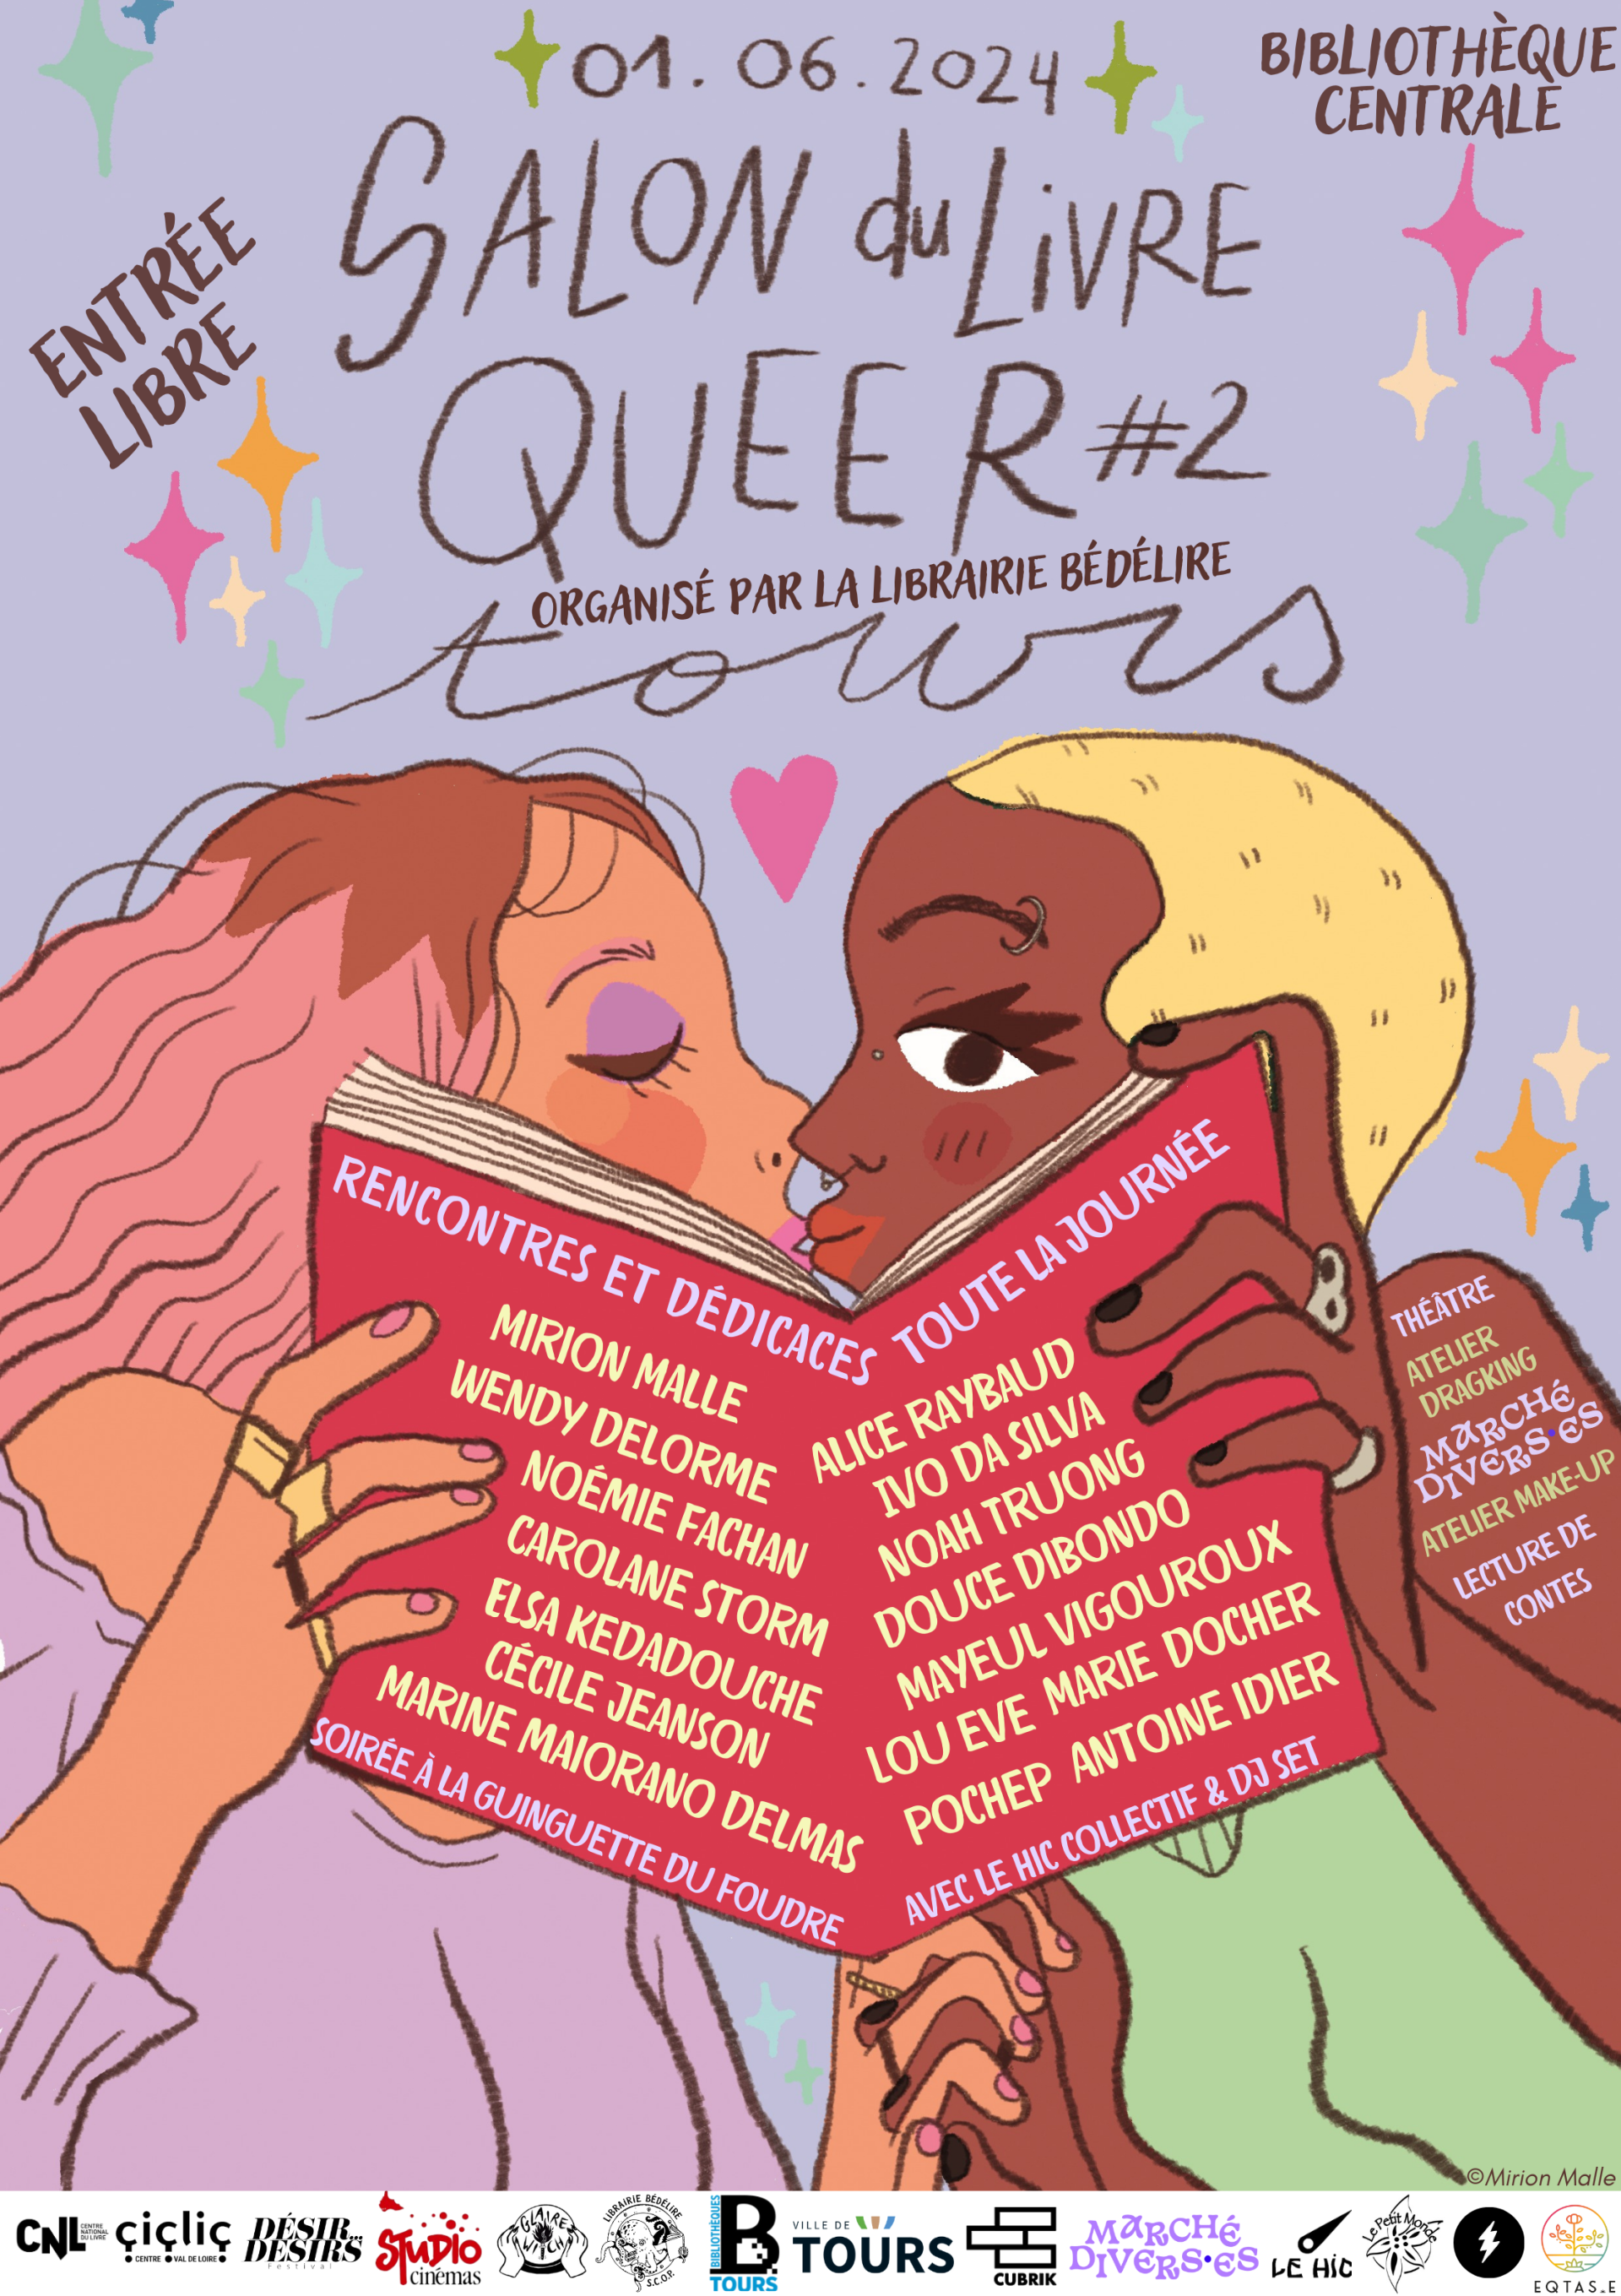 Salon du Livre Queer #2